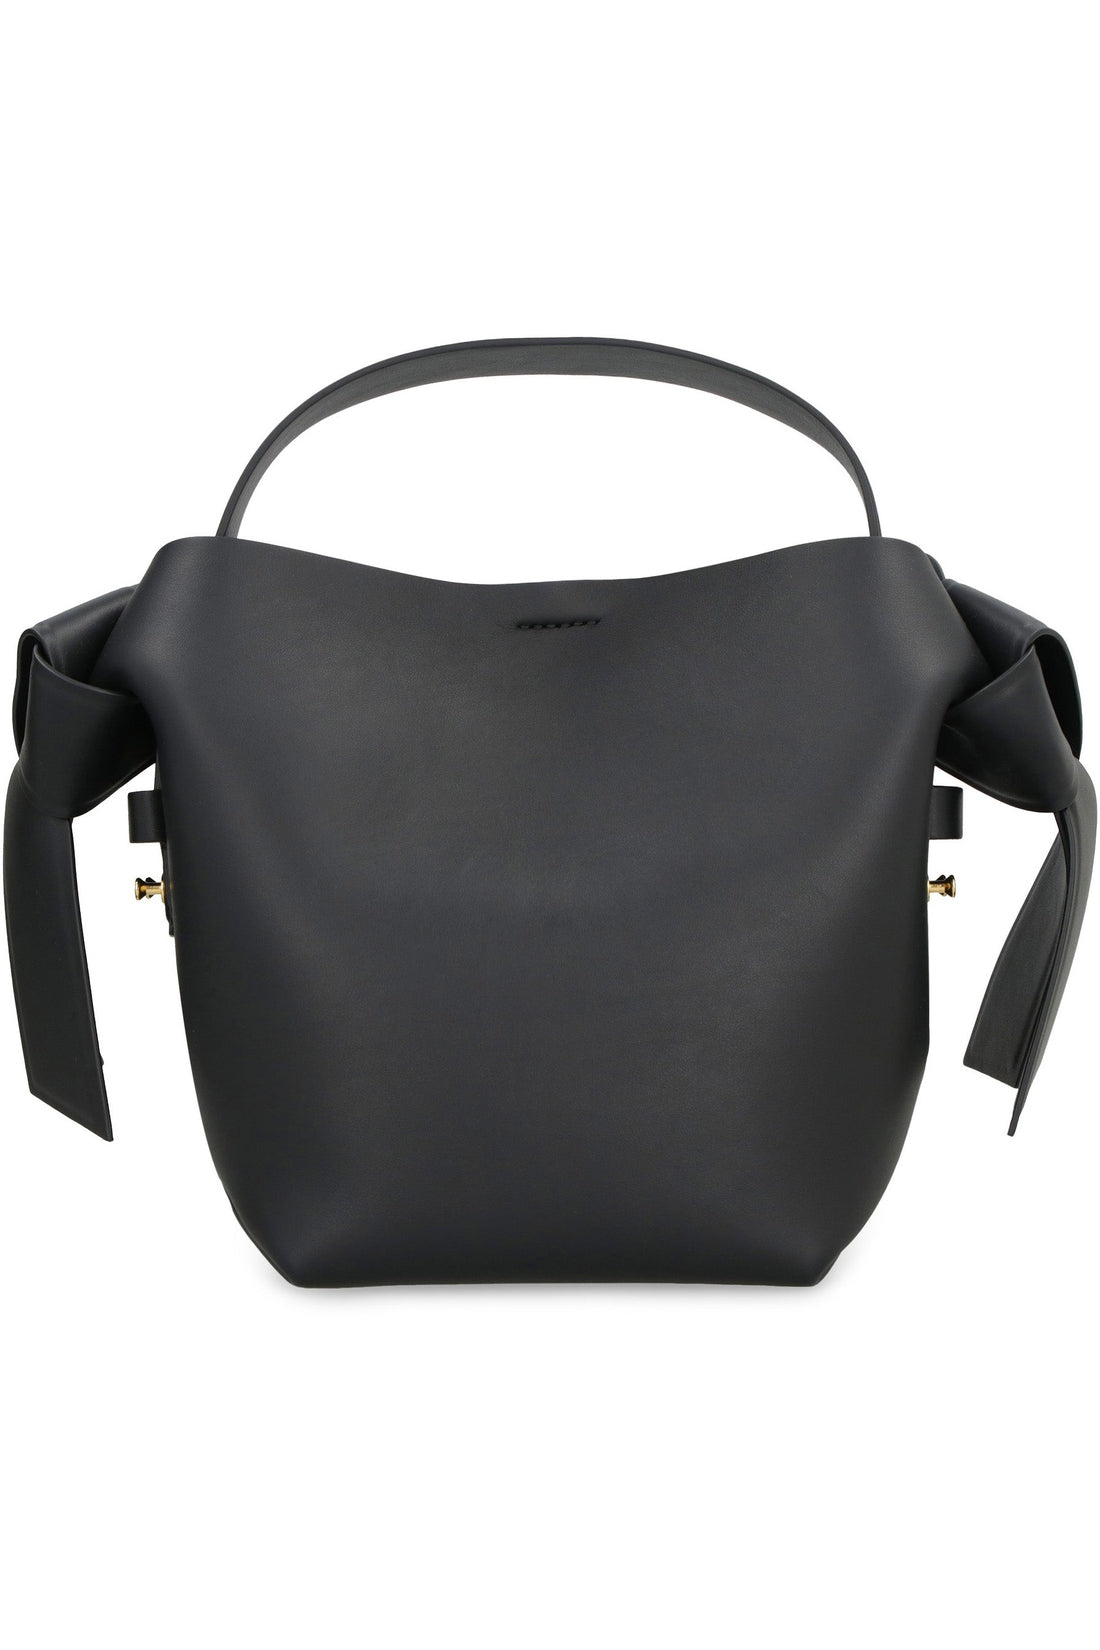 Acne Studios-OUTLET-SALE-Musubi mini leather shoulder bag-ARCHIVIST